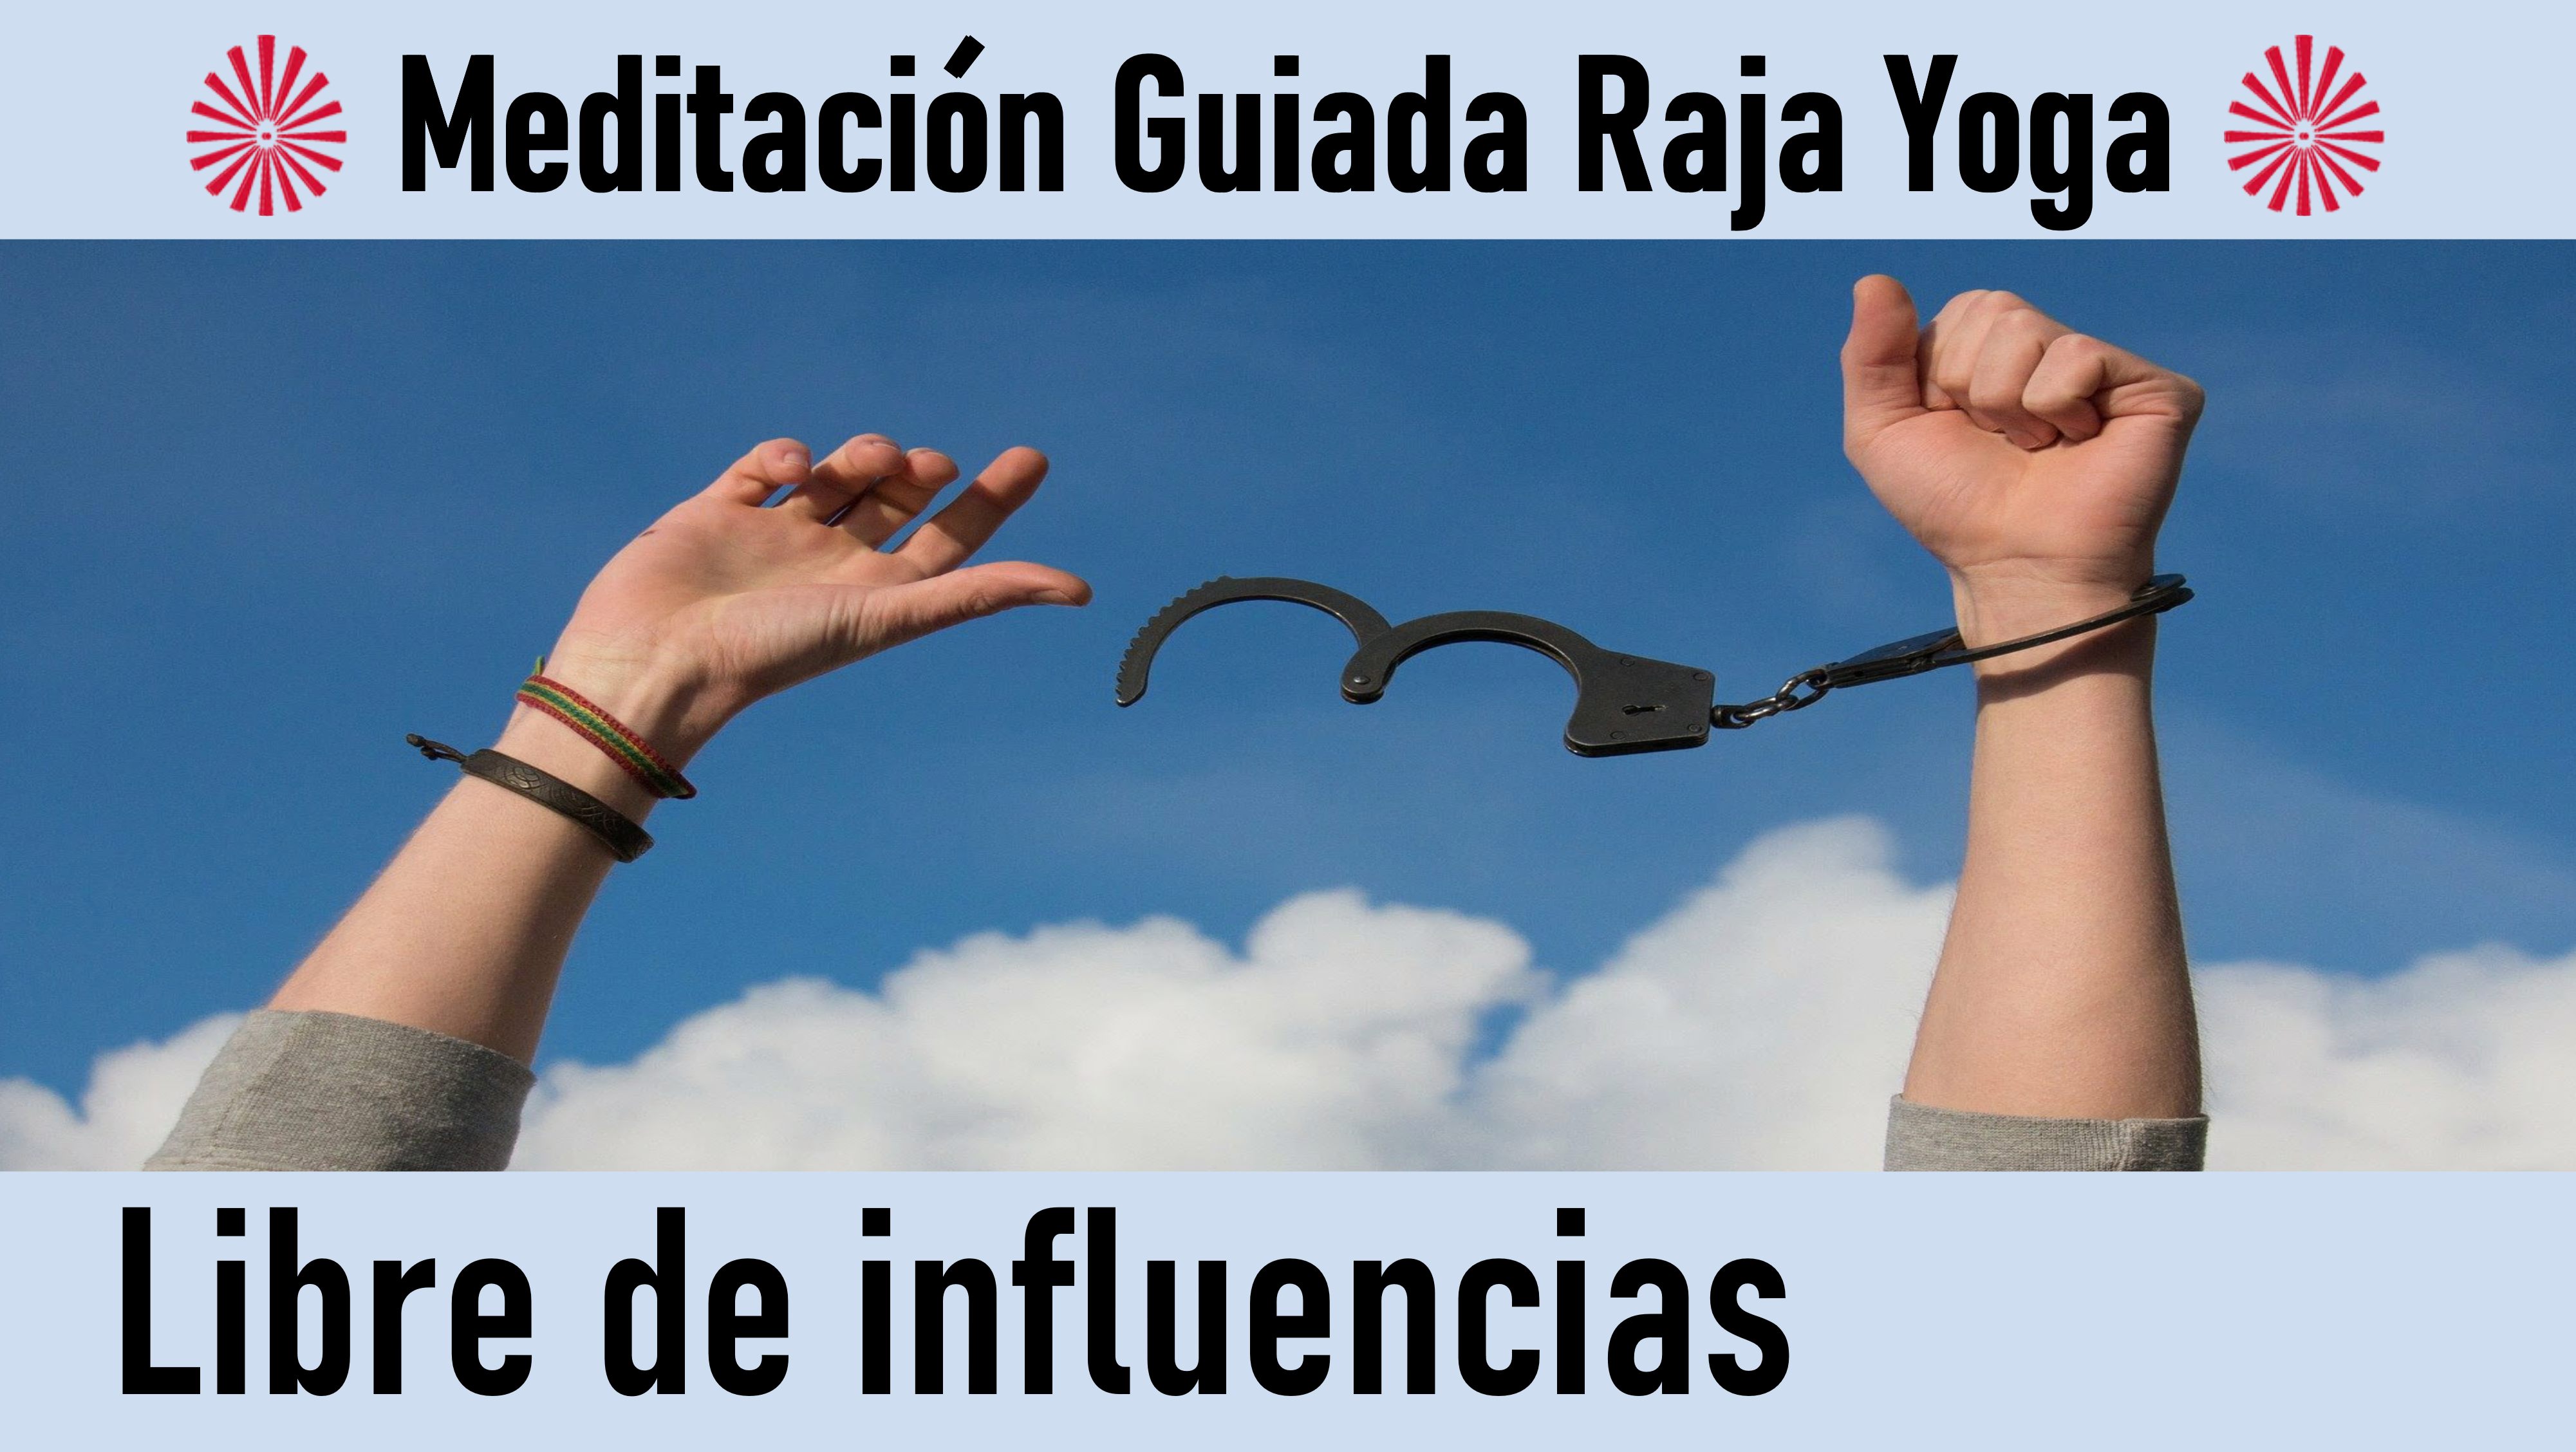 Meditación Raja Yoga: Libre de influencias (5 Julio 2020) On-line desde Sevilla